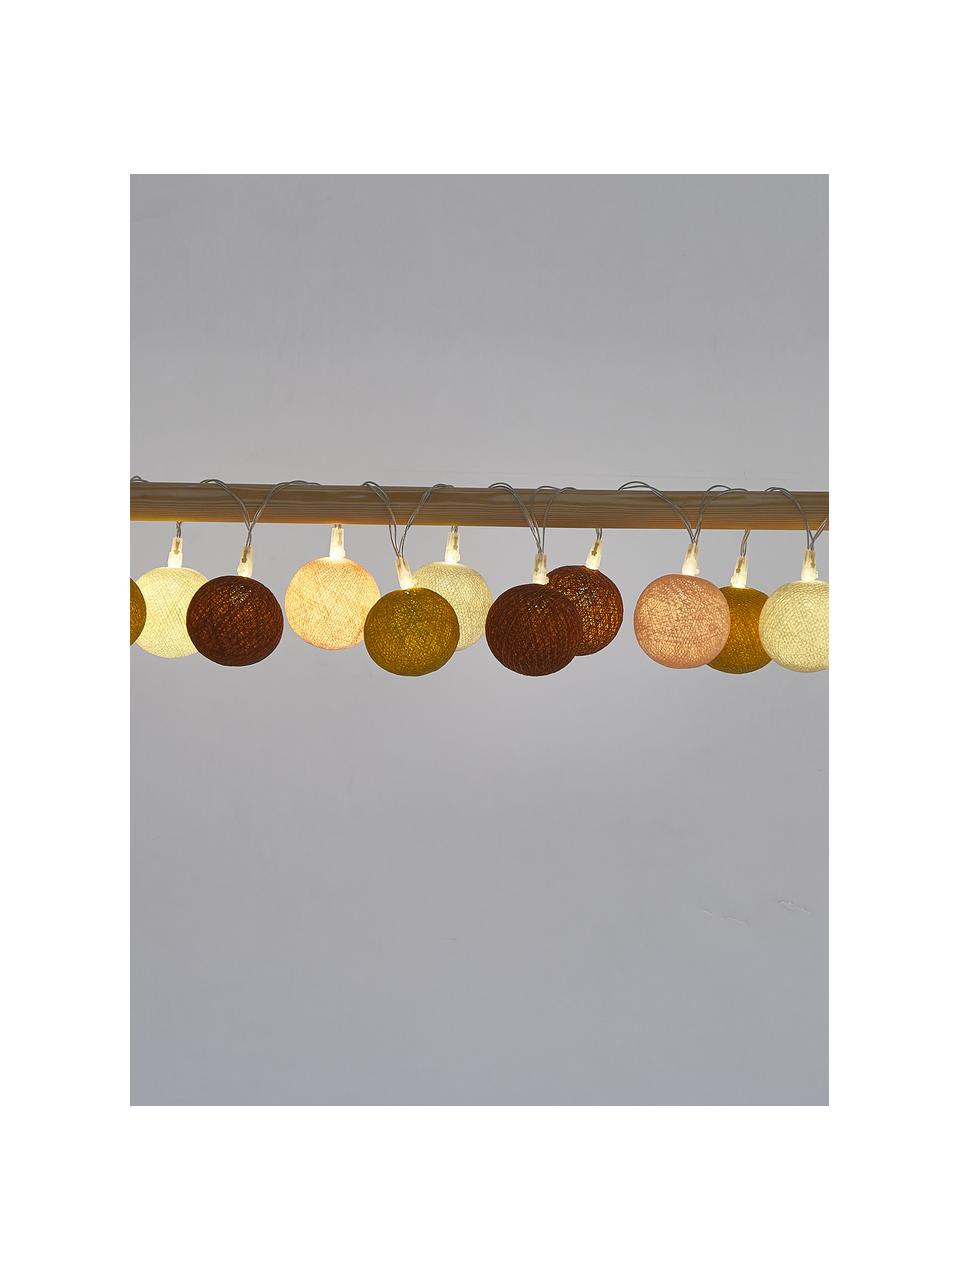 Girlanda świetlna LED Colorain,  dł. 378 cm i 20 lampionów, Kremowy, blady różowy, żółty, rdzawoczerwony, D 378 cm